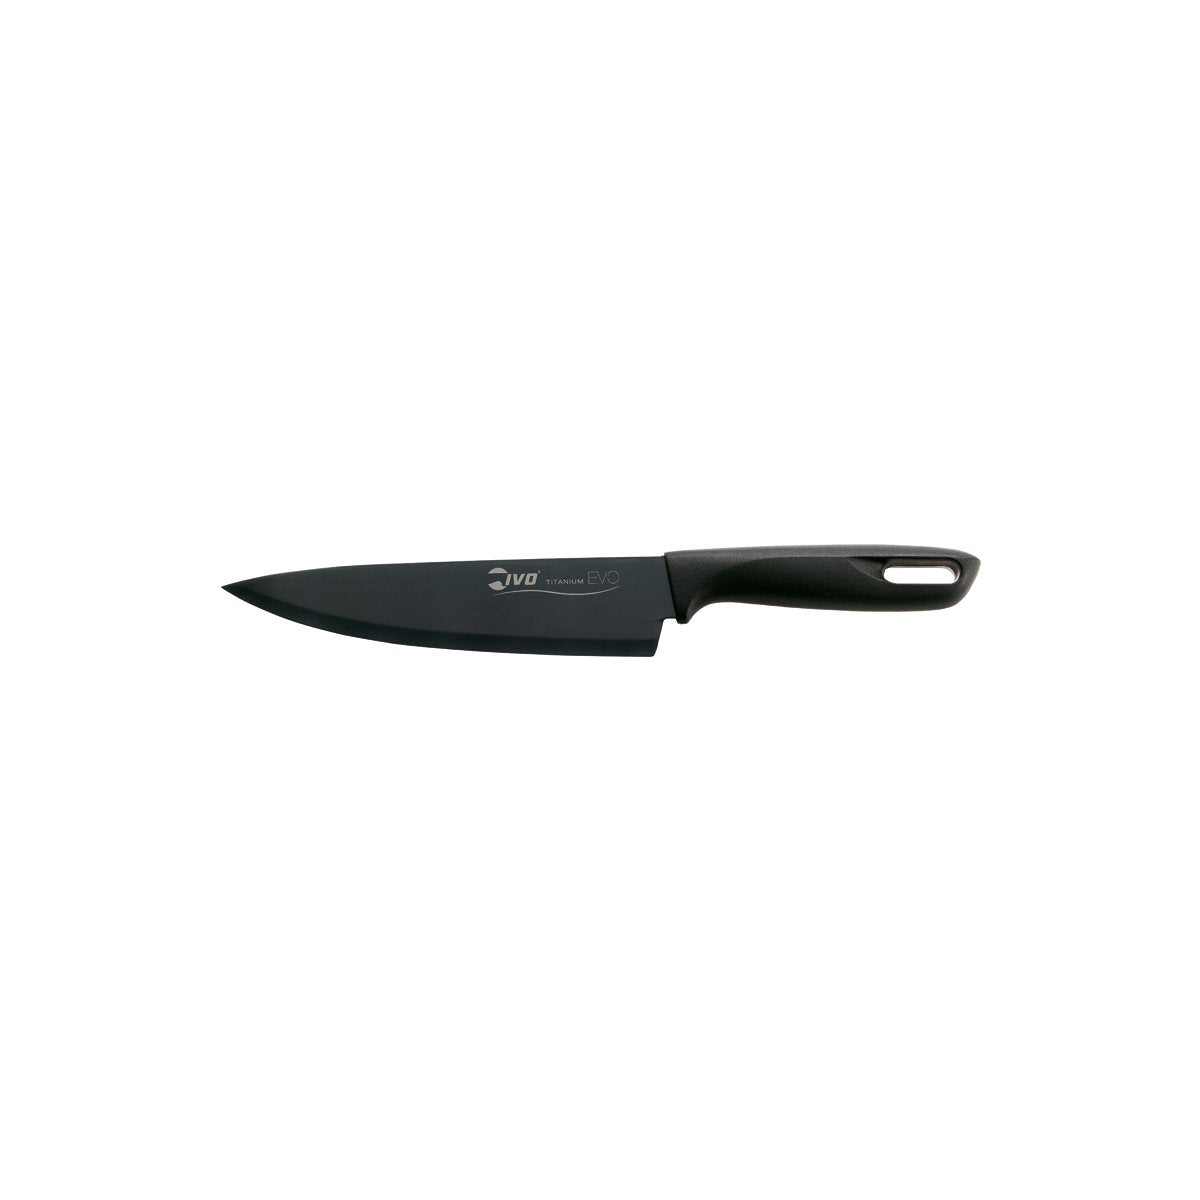 27095 Ivo Titanium Evo 221000 Chefs Knife Black Handle 180mm Tomkin Australia Hospitality Supplies